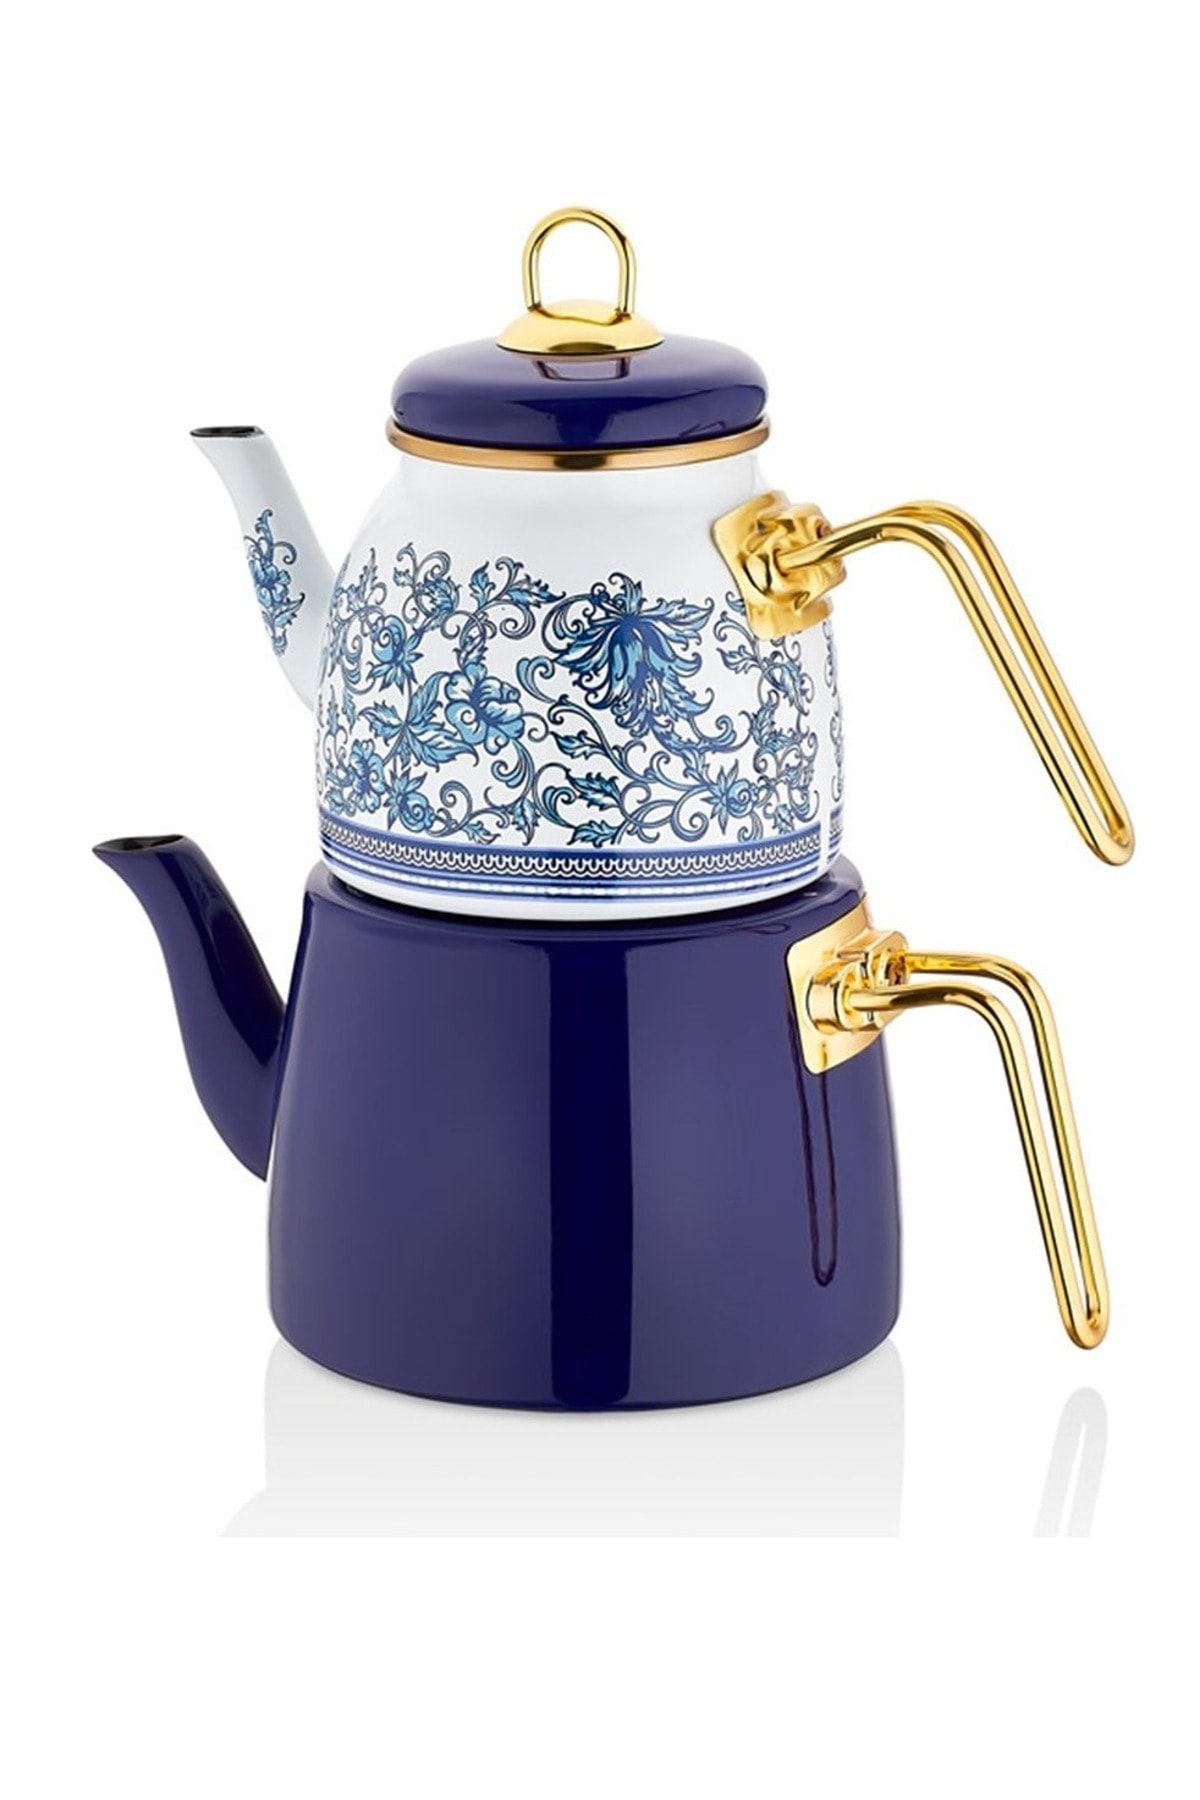 PORLİSTAN Koyu Mavi Çini Desenli Emaye Çaydanlık Takımı, Koyu Mavi Gold Saplı Emaye Çaydanlık Takımı